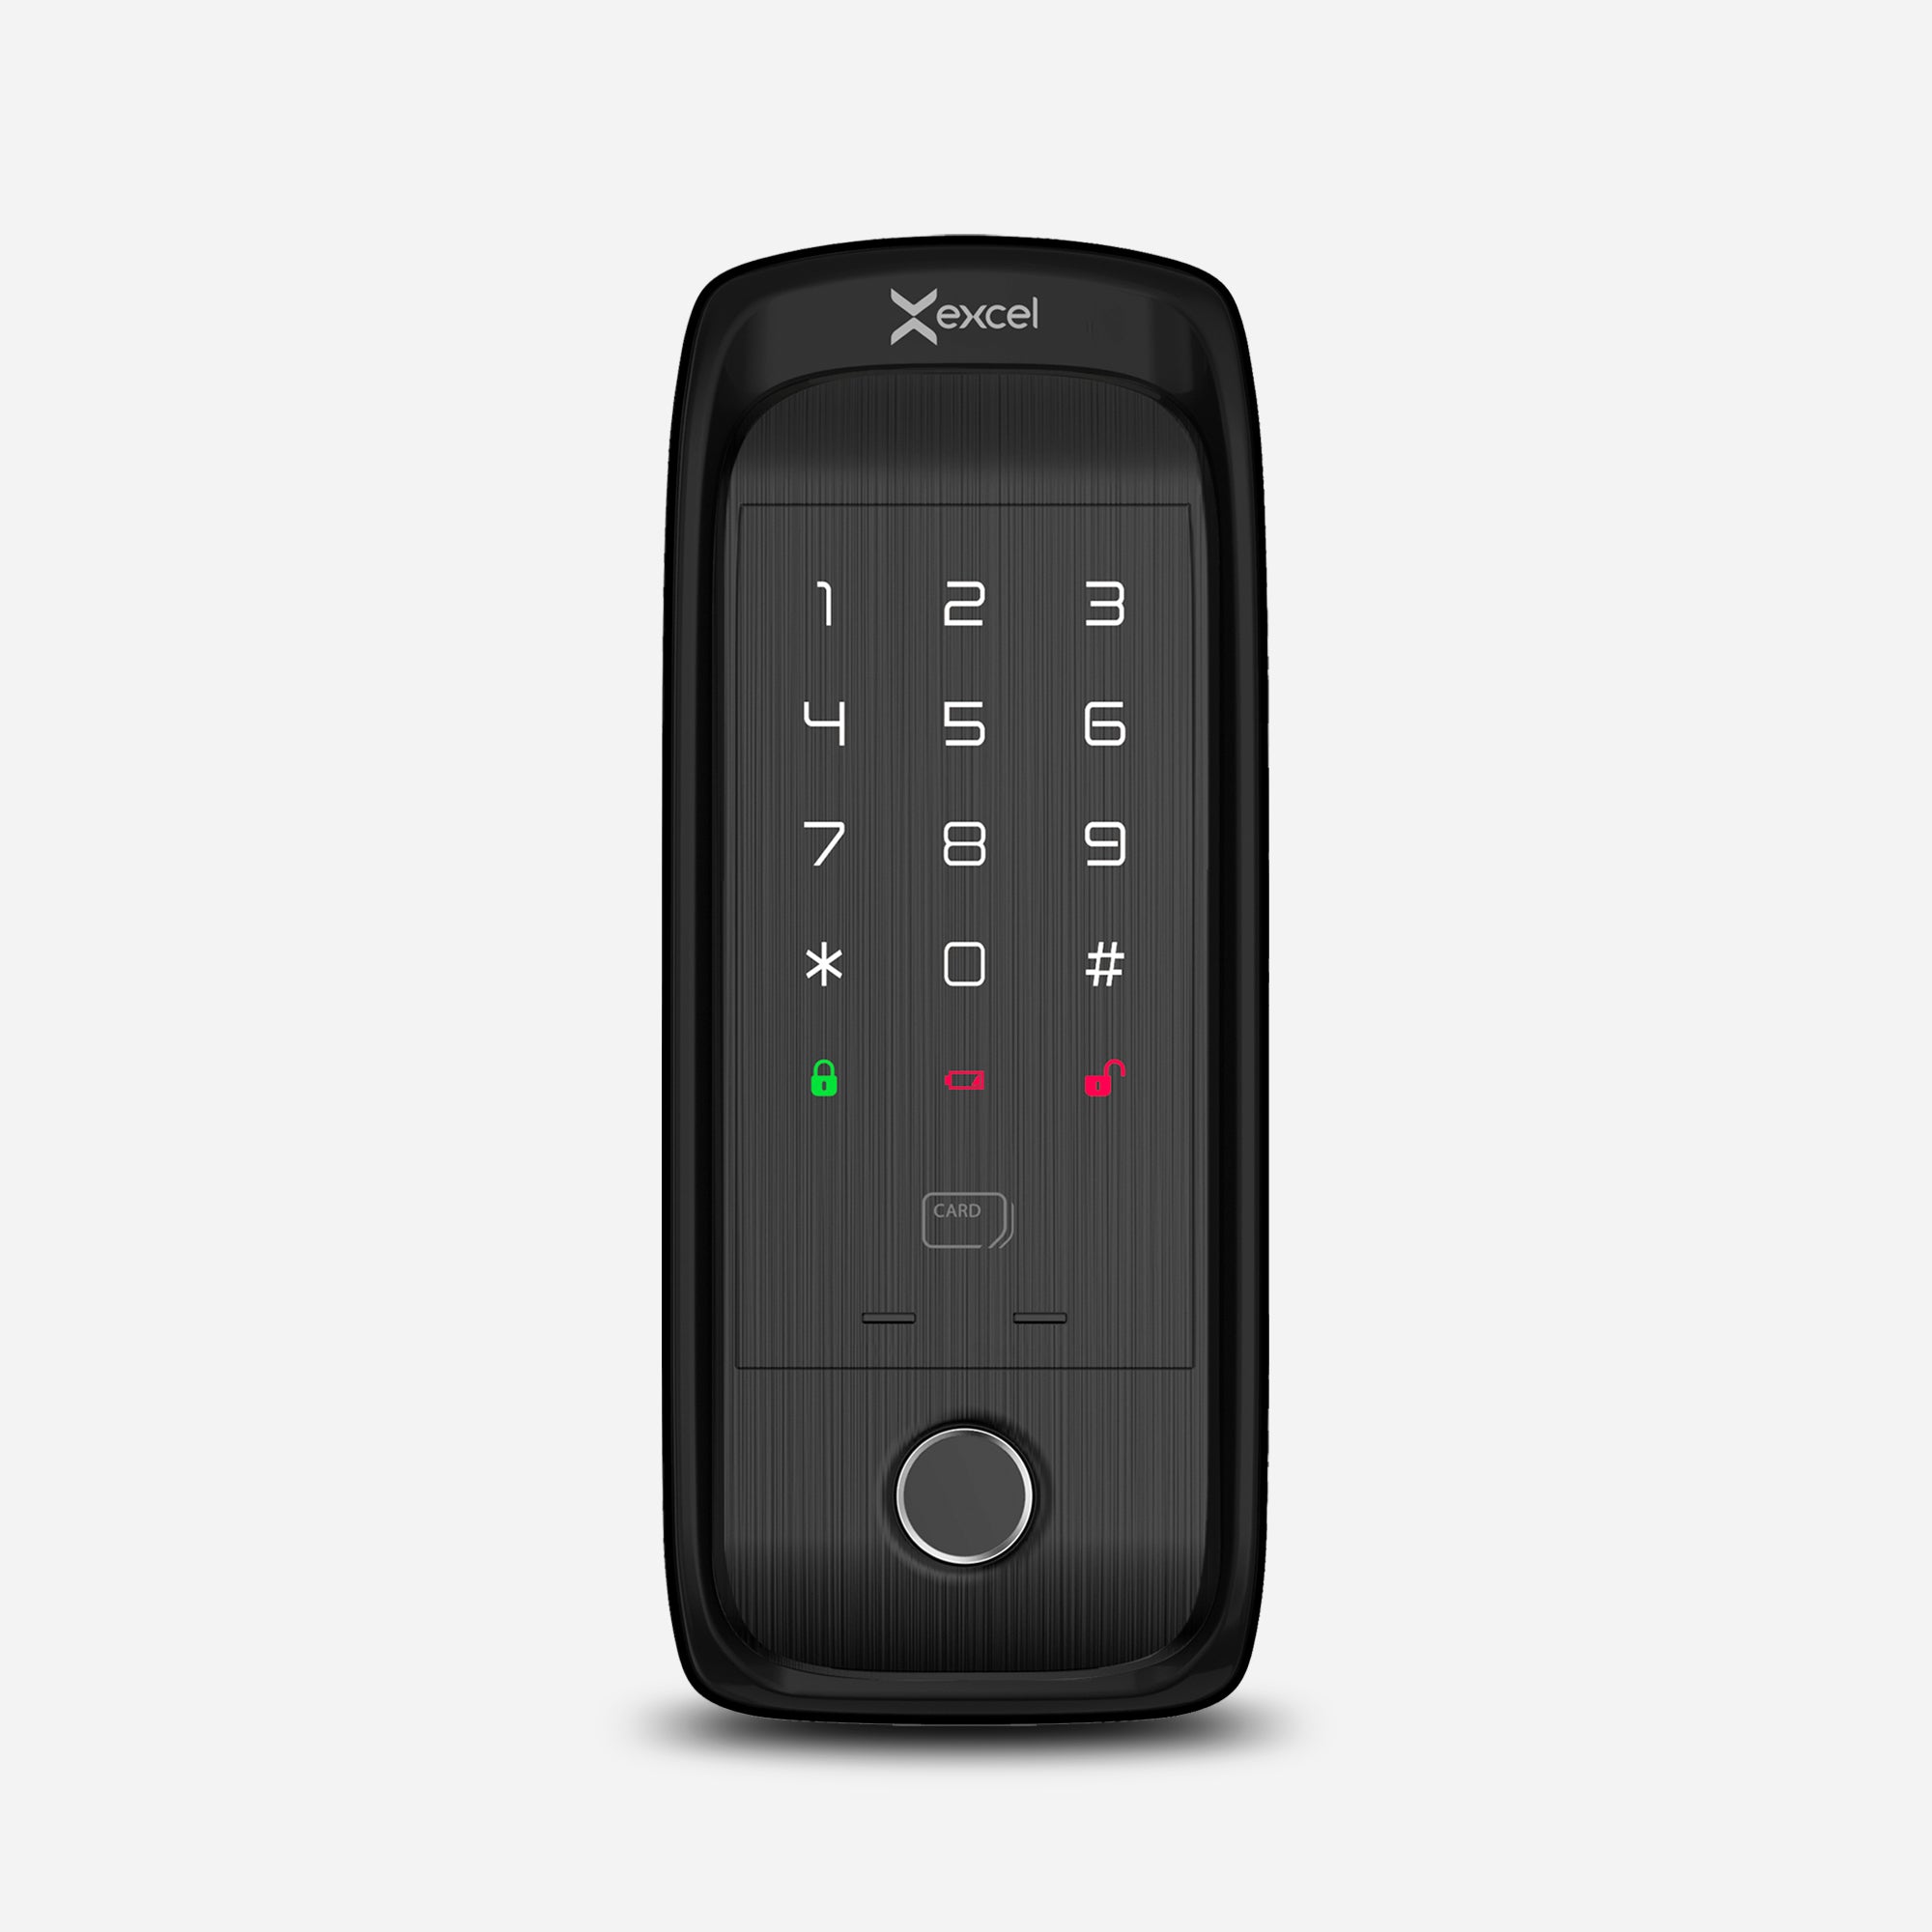 Cerradura digital tipo cerrojo EXC-SD400. WiFi y Bluetooth, Huella Digital, Contraseña Numérica y Tarjeta RFID. Módulo exterior, vista frontal.